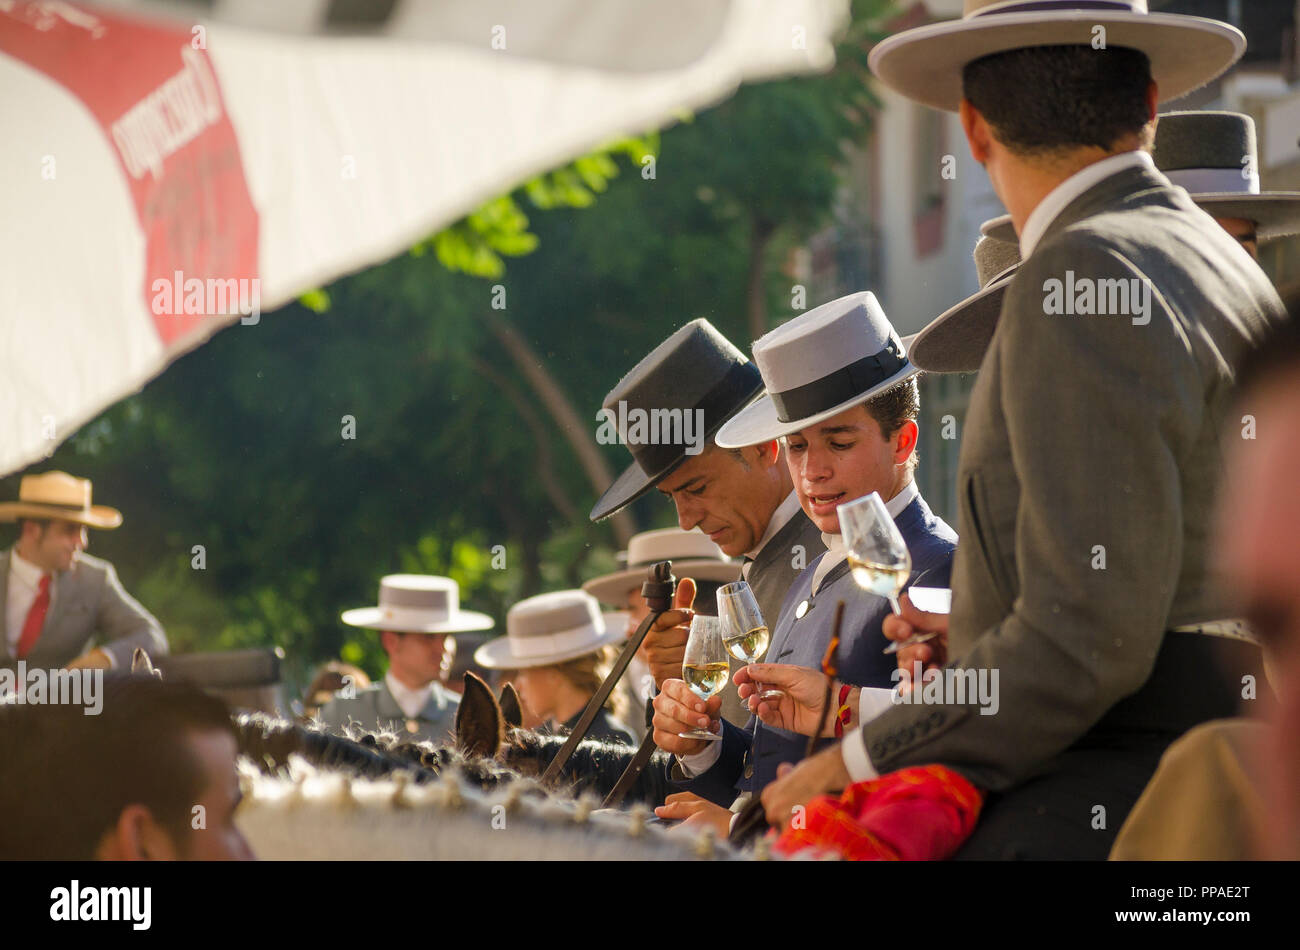 Einige junge spanische Reiter an der Bar, trinken Sherry, spanische Hüte tragen, während der jährlichen Reiten Veranstaltung. Fuengirola, Andalusien. Stockfoto